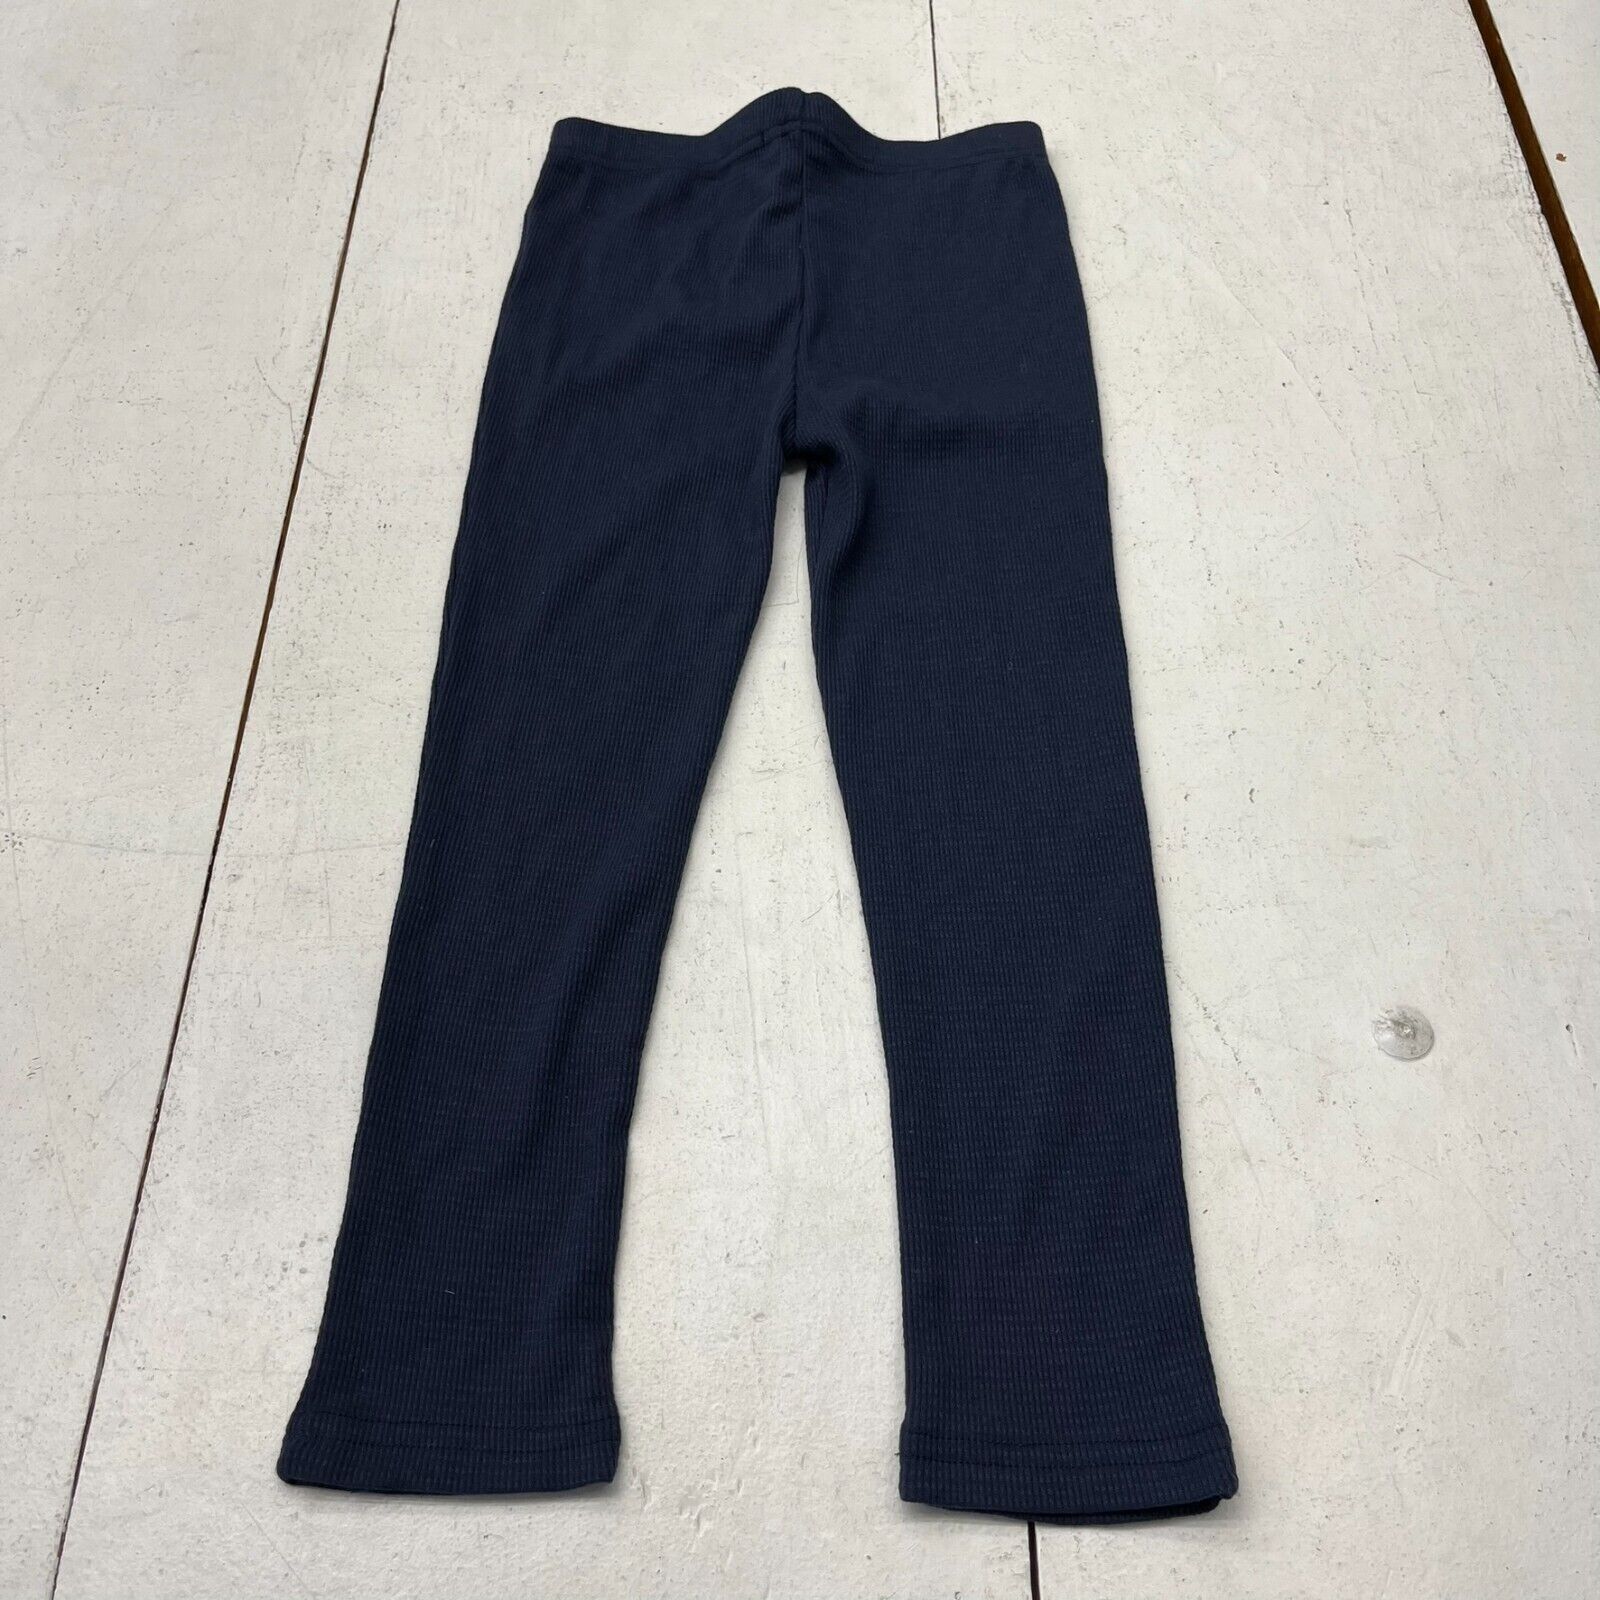 Wool / Silk Baby Leggings in Navy Blue by Engel – Junior Edition